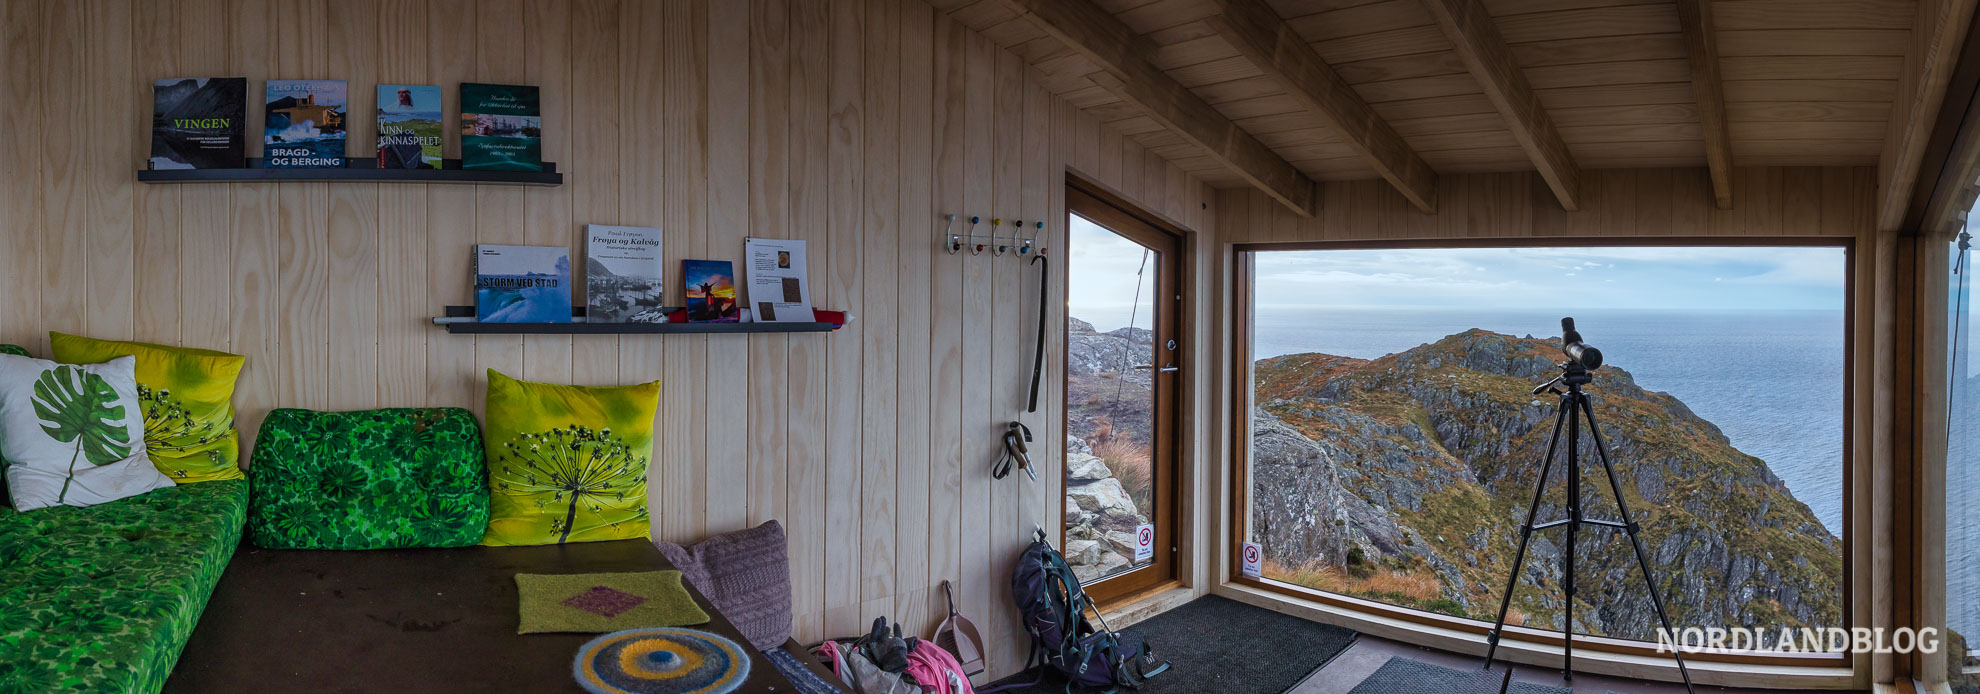 Panorama in der Schutzhütte Dosabu in Fjordnorwegen Bremanger